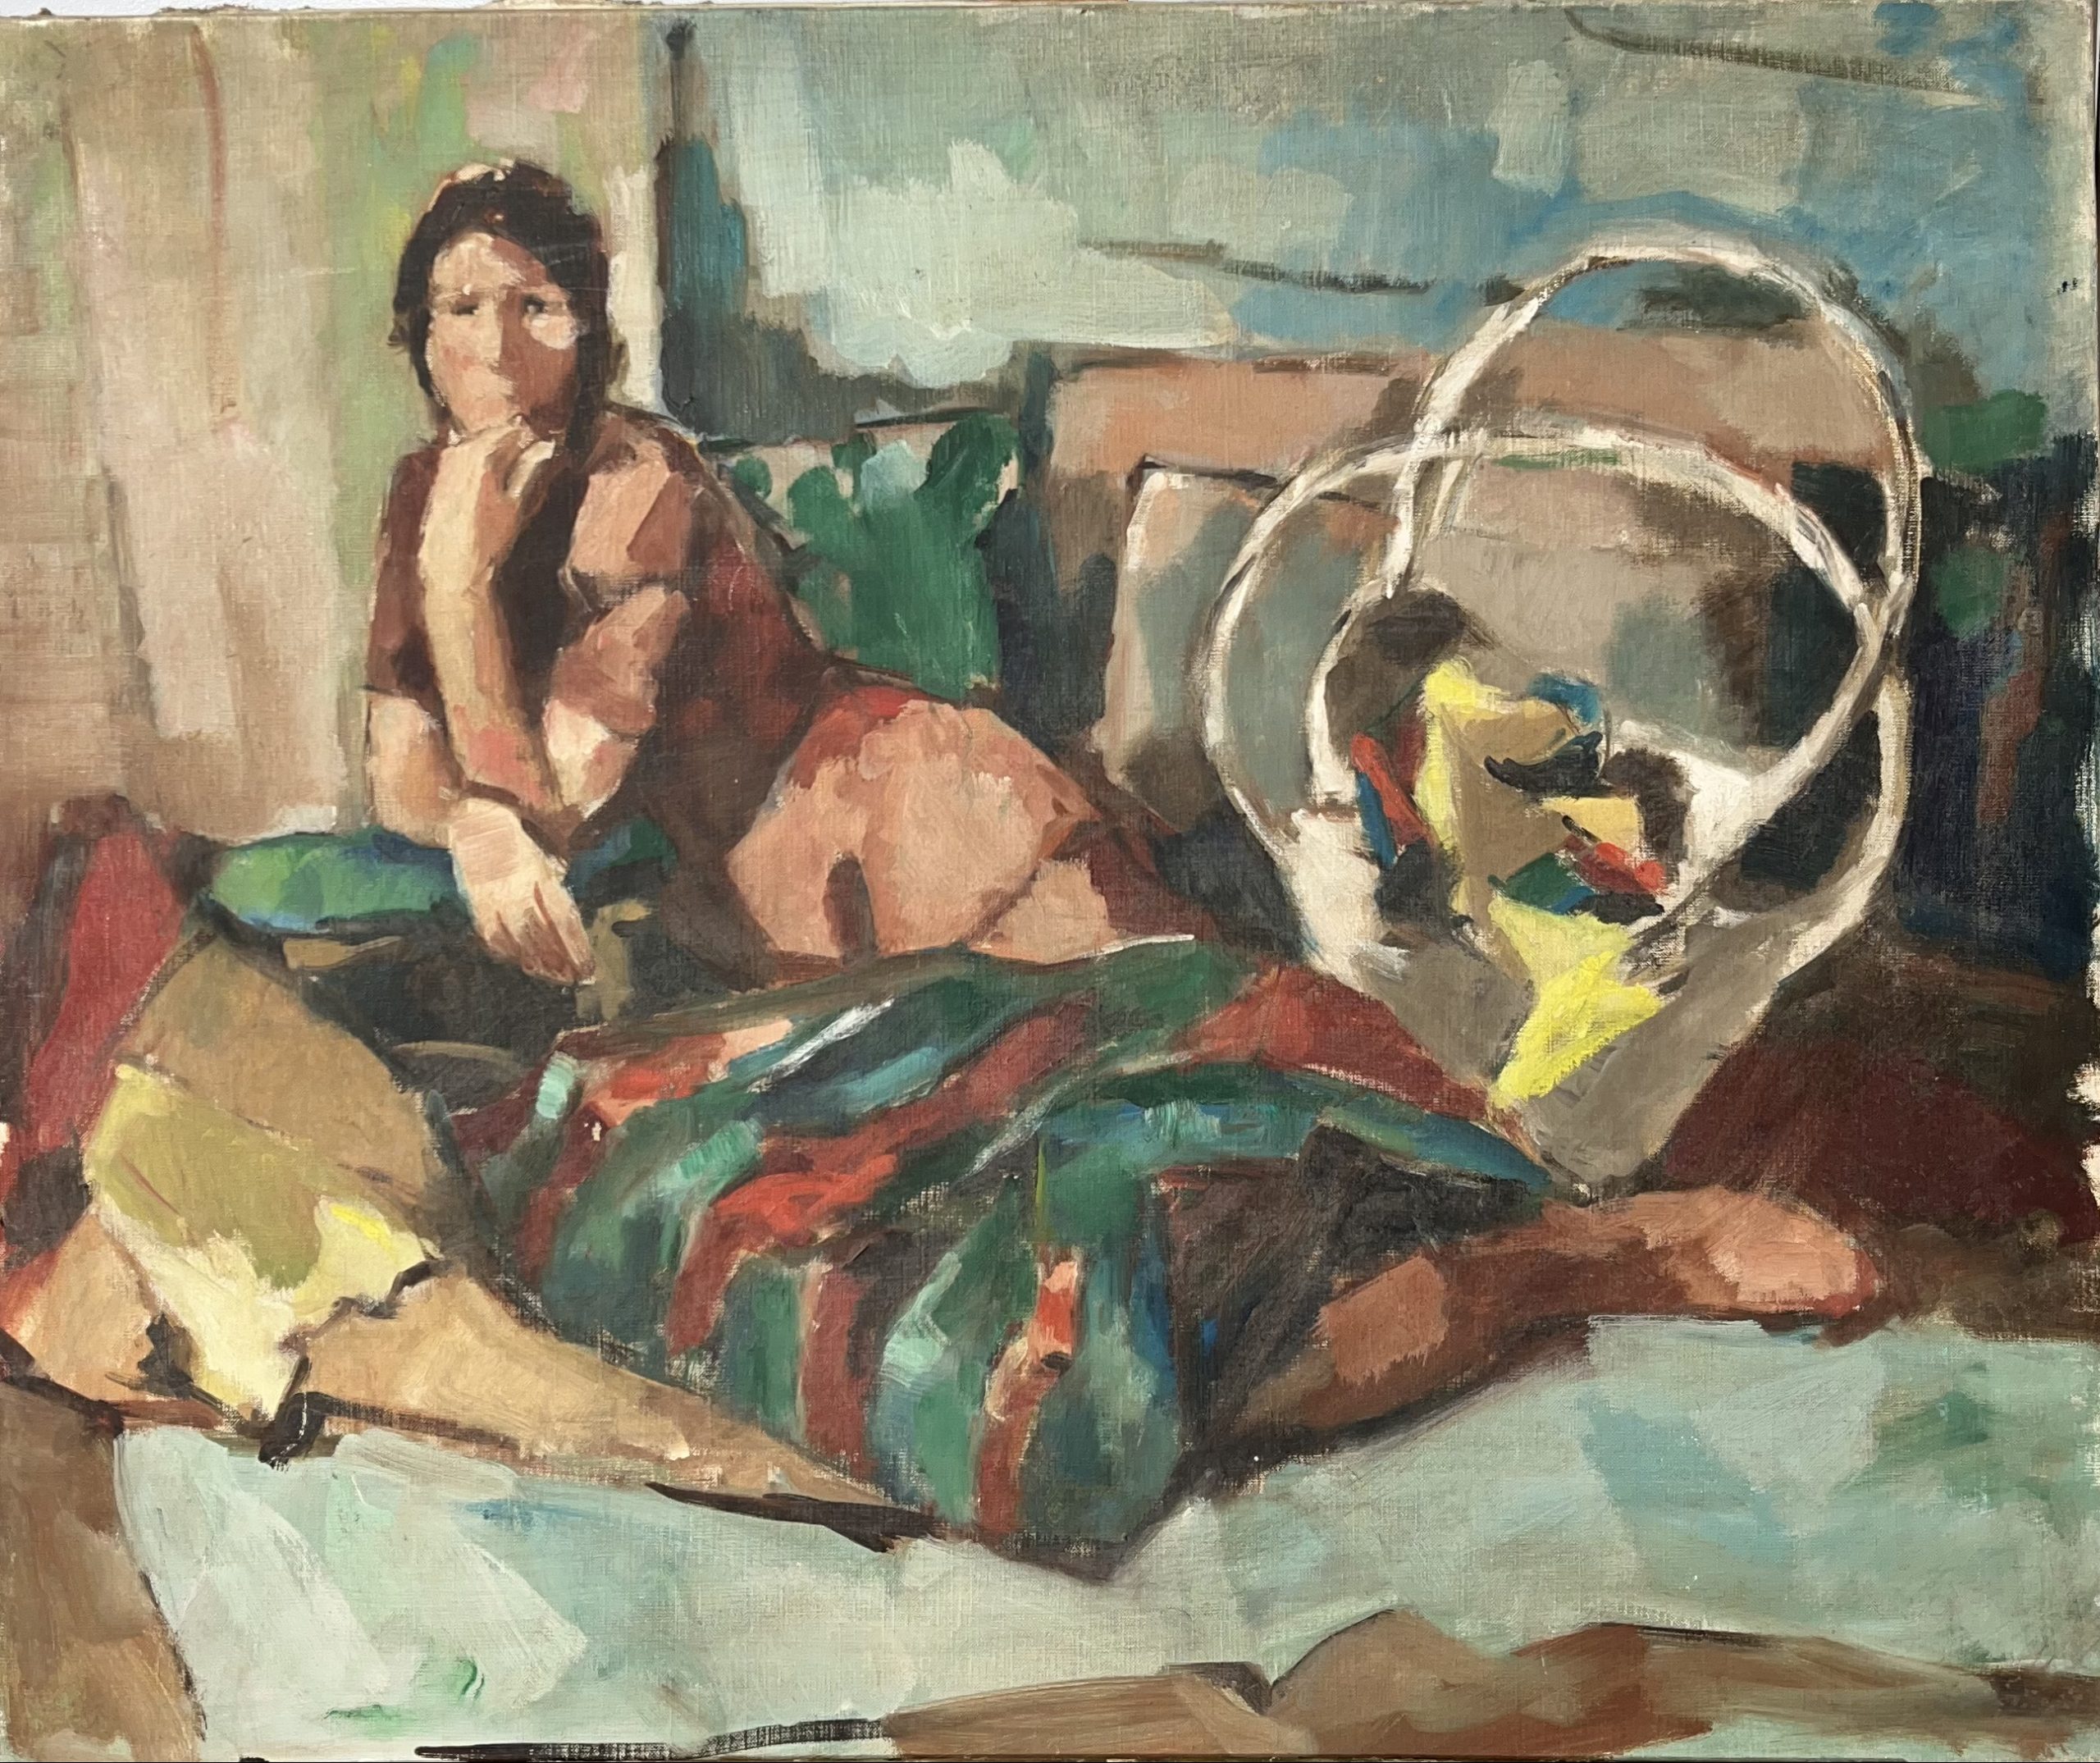 DURING, Femme allongée, XXe, huile sur toile, 65 x 54 cm